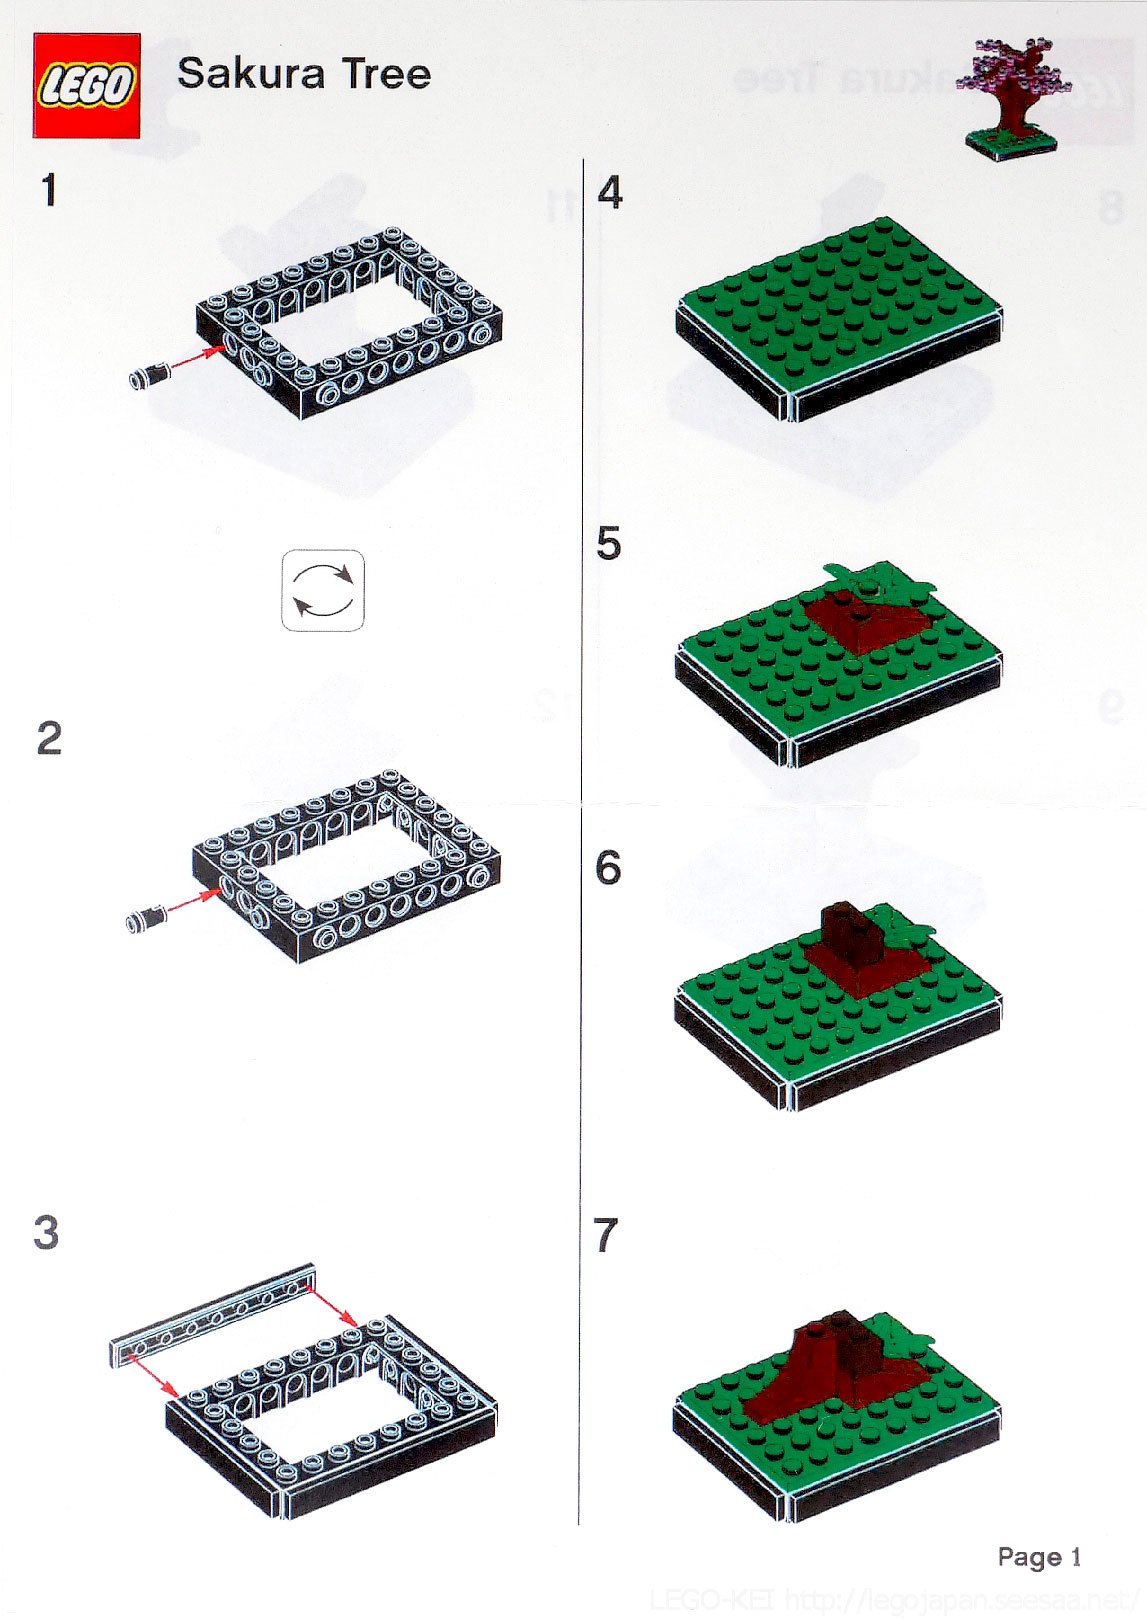 Brickfinder - LEGO Sakura Tree Instructions!